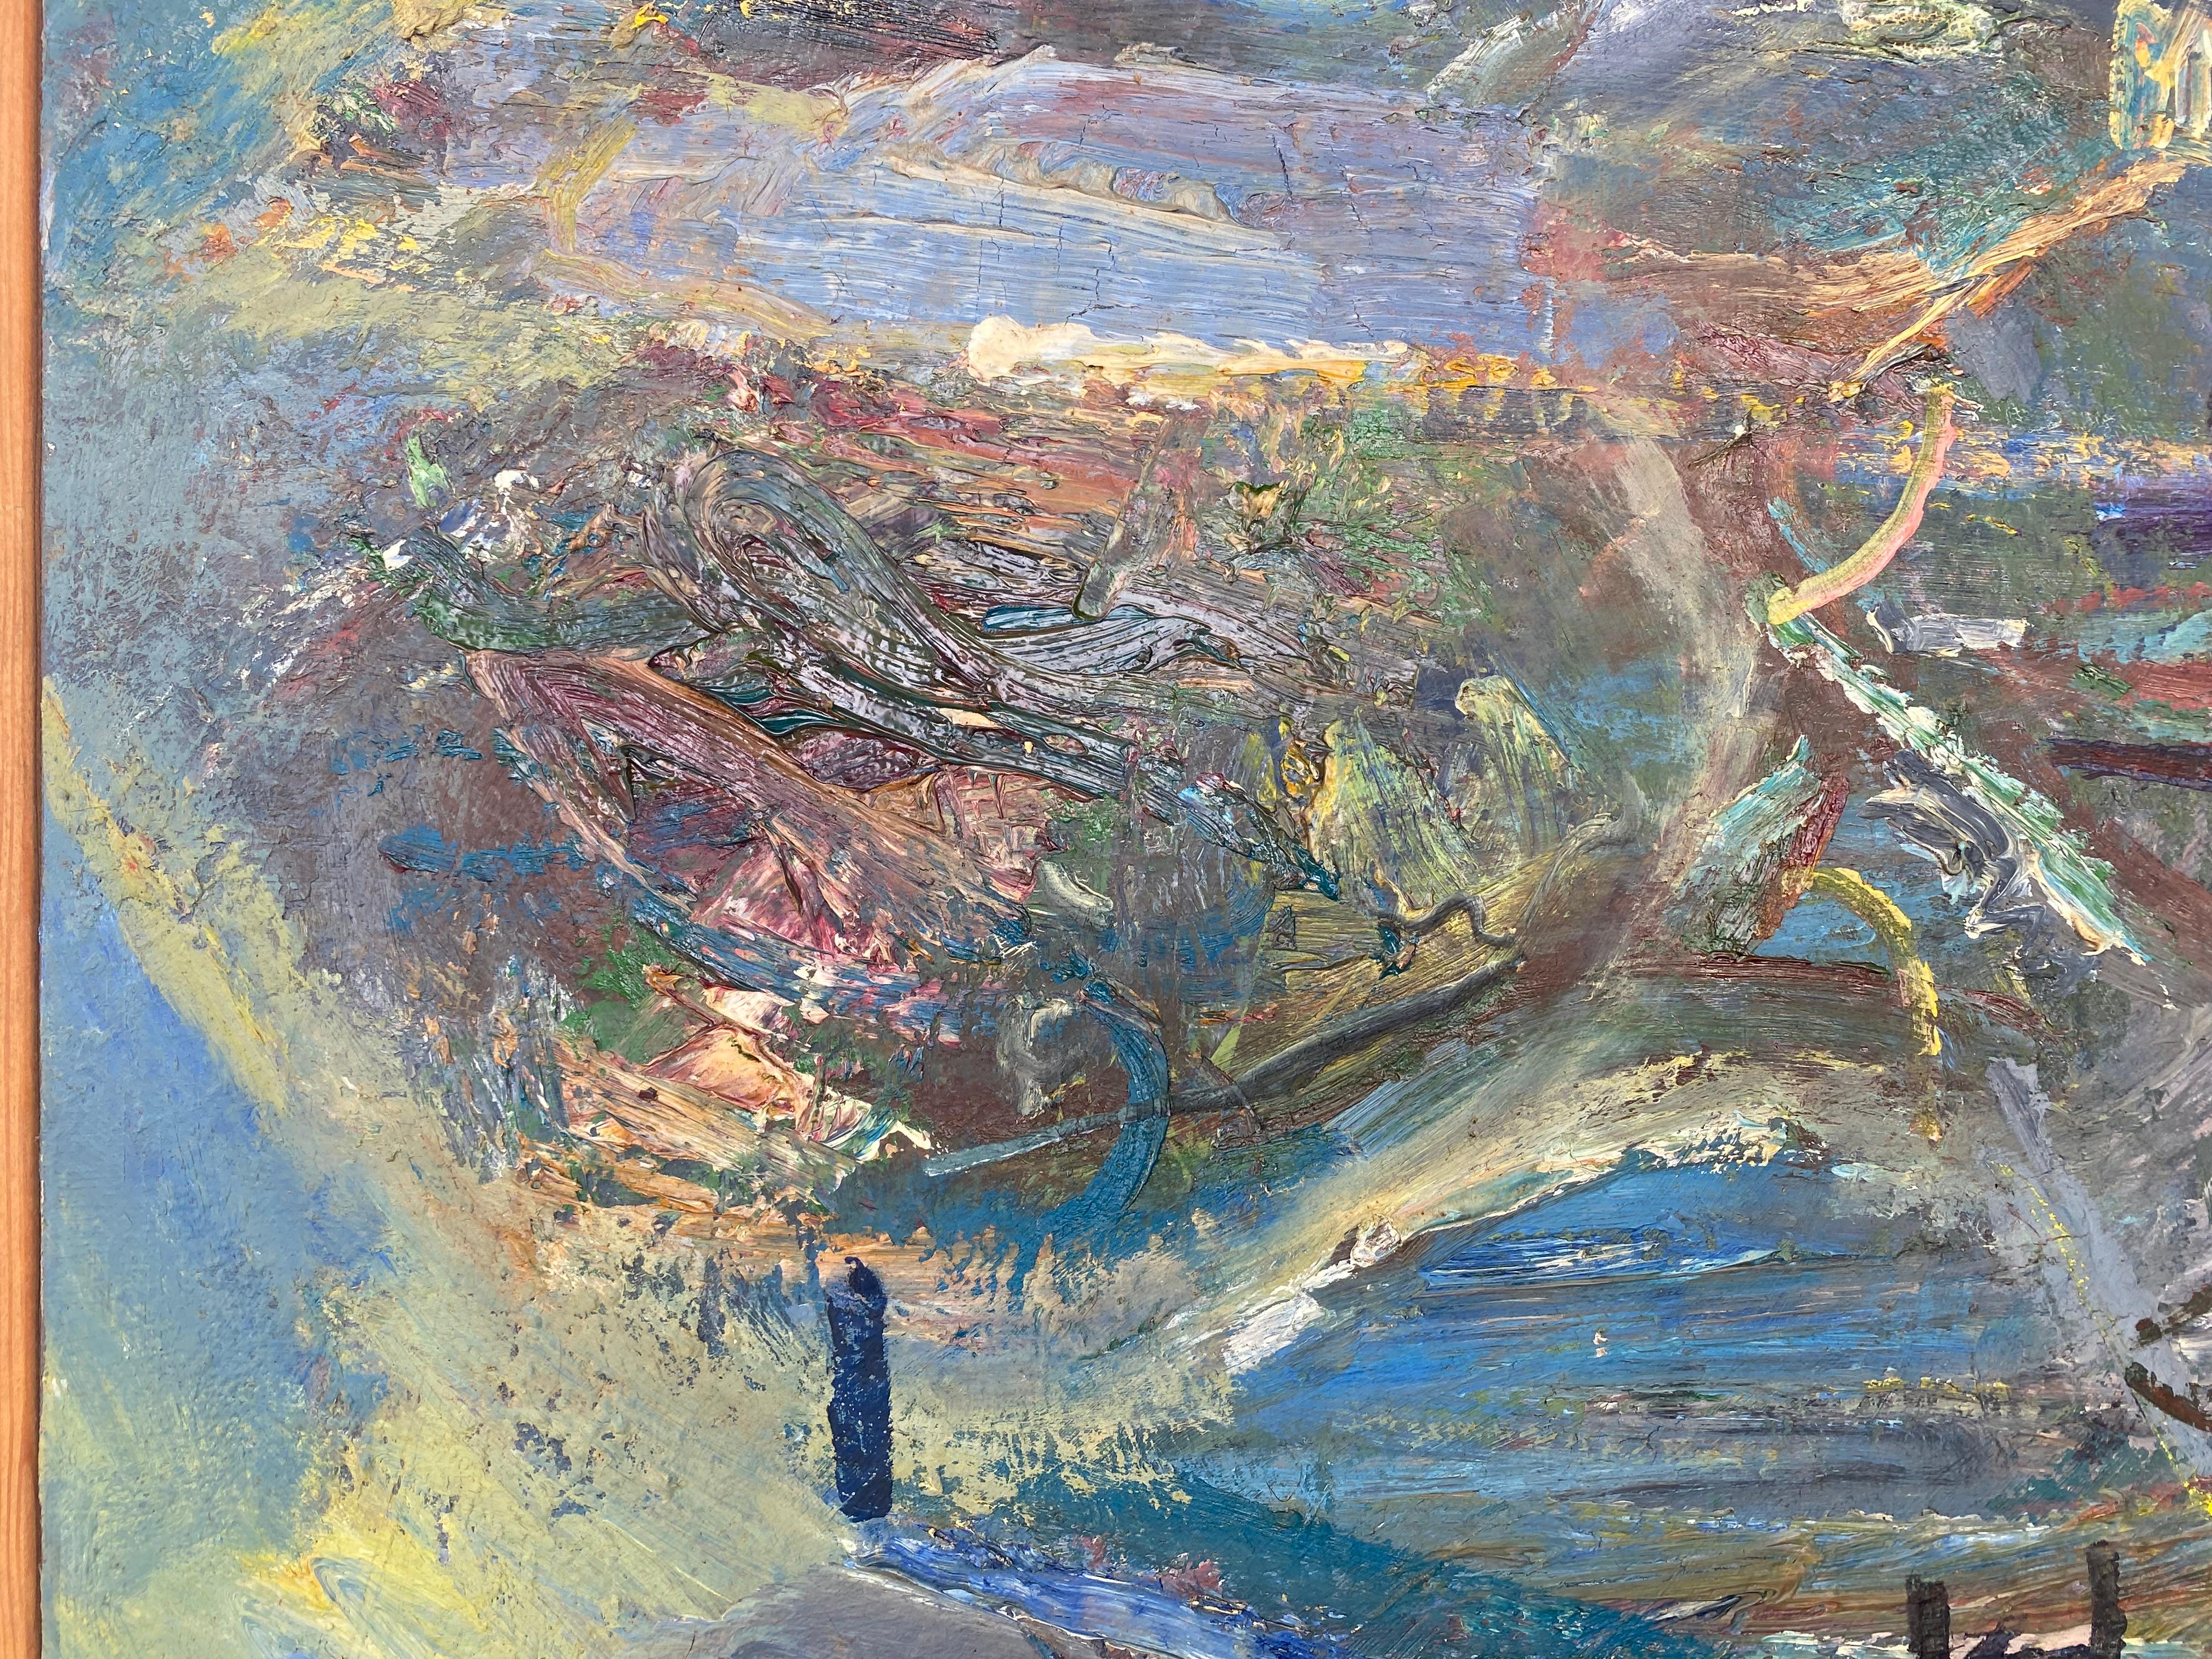 Peinture abstraite figurative vintage de Warren Fischer sur toile de lin.

Est proposée à la vente une peinture abstraite figurative sur toile de lin de l'artiste américain Warren Fischer (1943-2001). Le tableau fait partie de la succession de